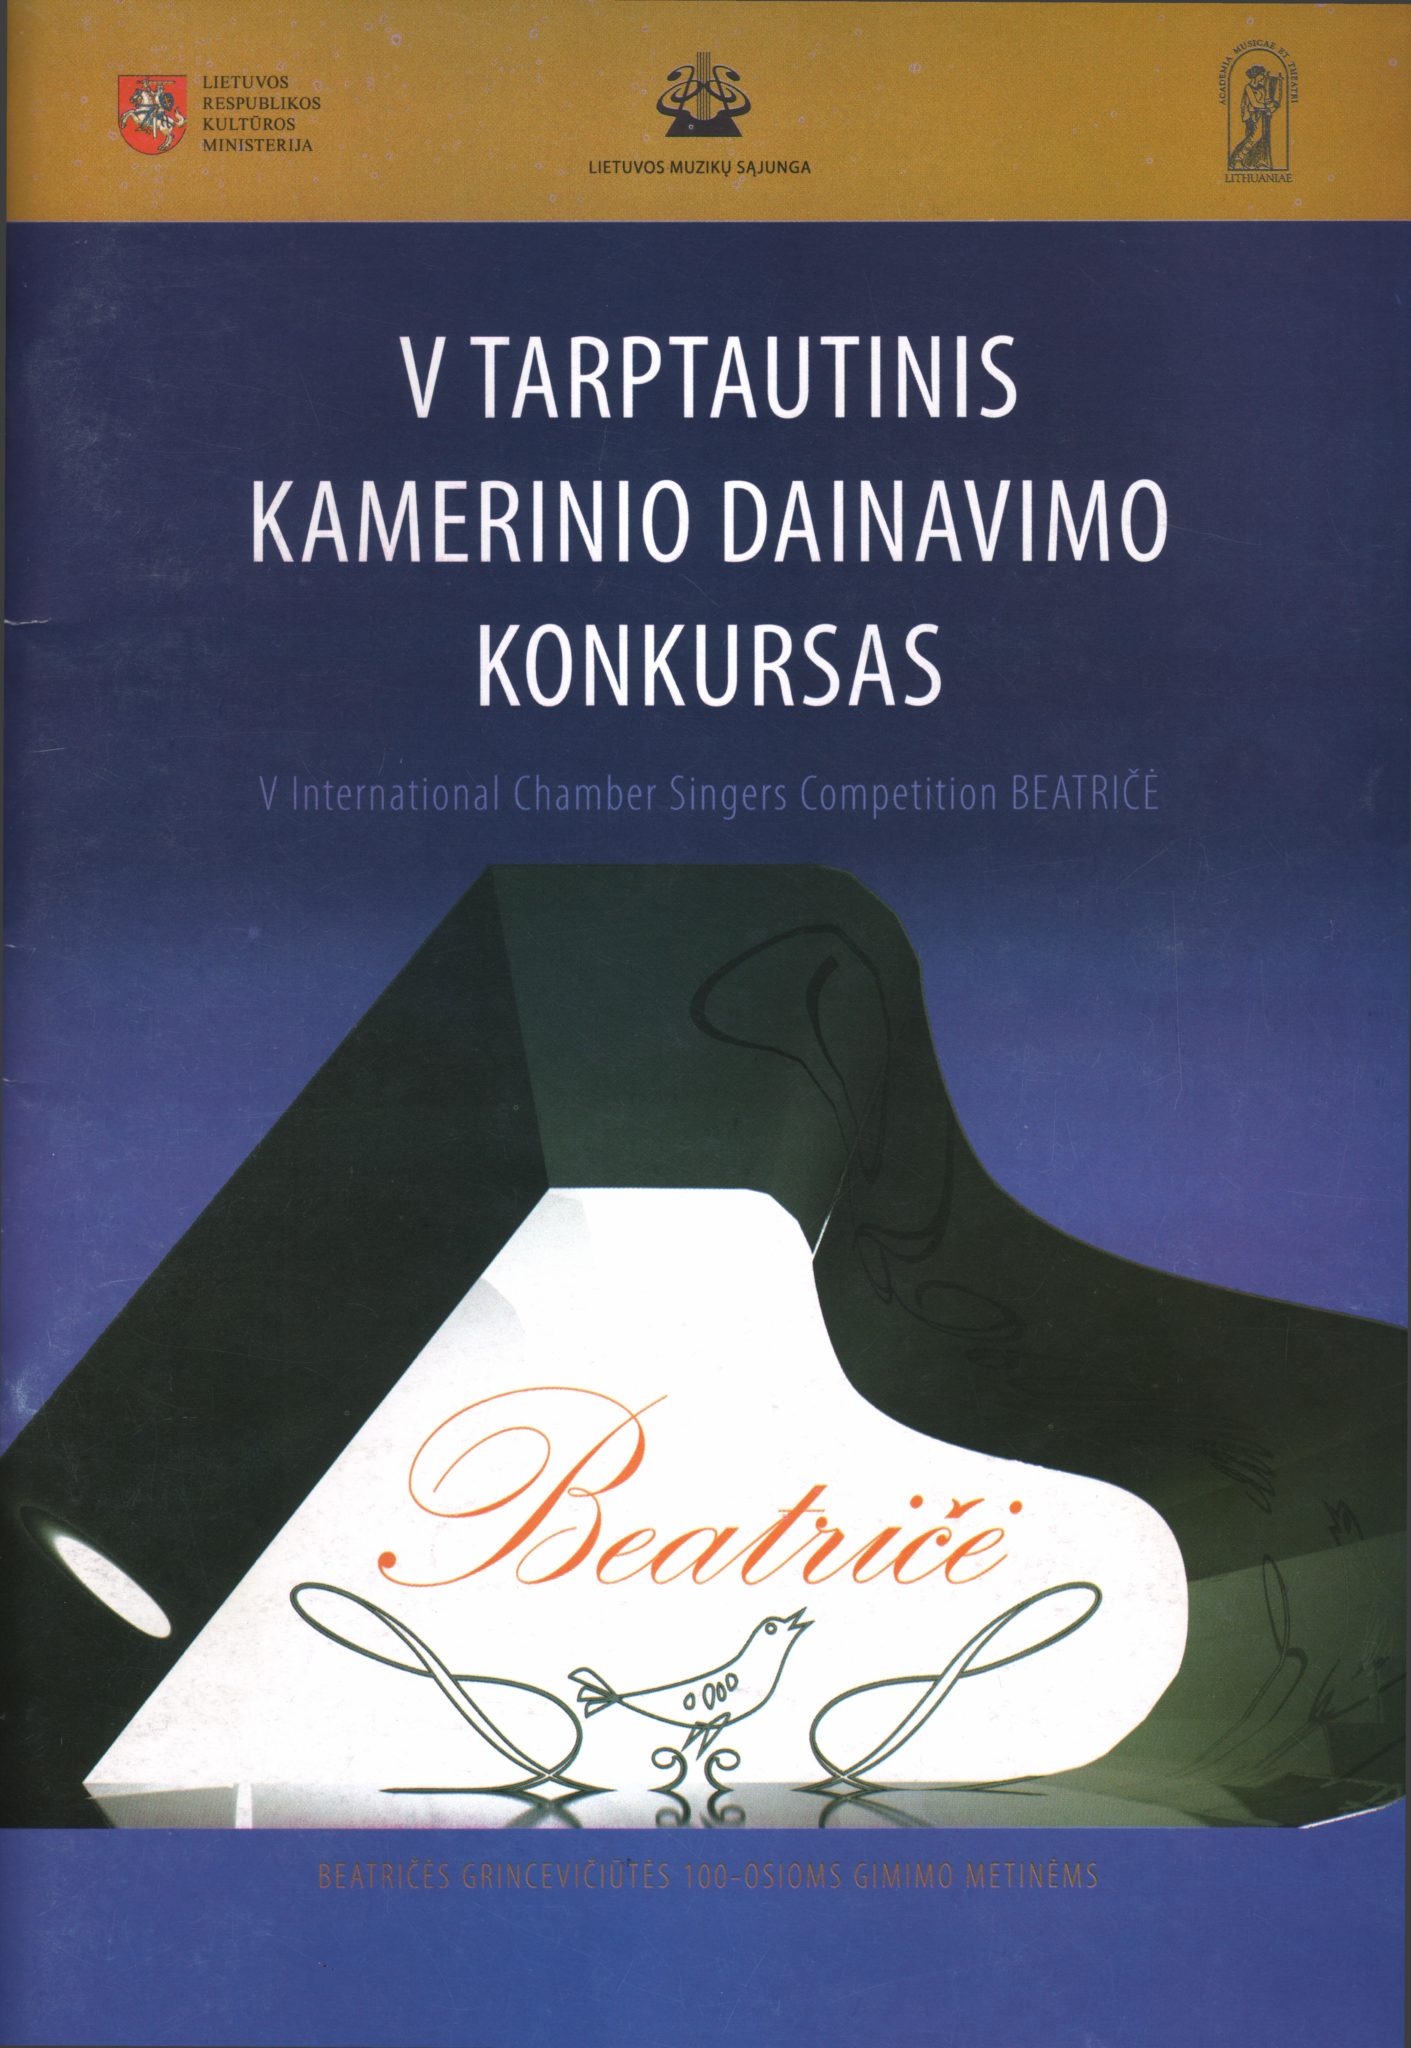 V tarptautinis kamerinio dainavimo konkursas „Beatričė“. – [Vilnius, 2011]. Leidinio viršelis